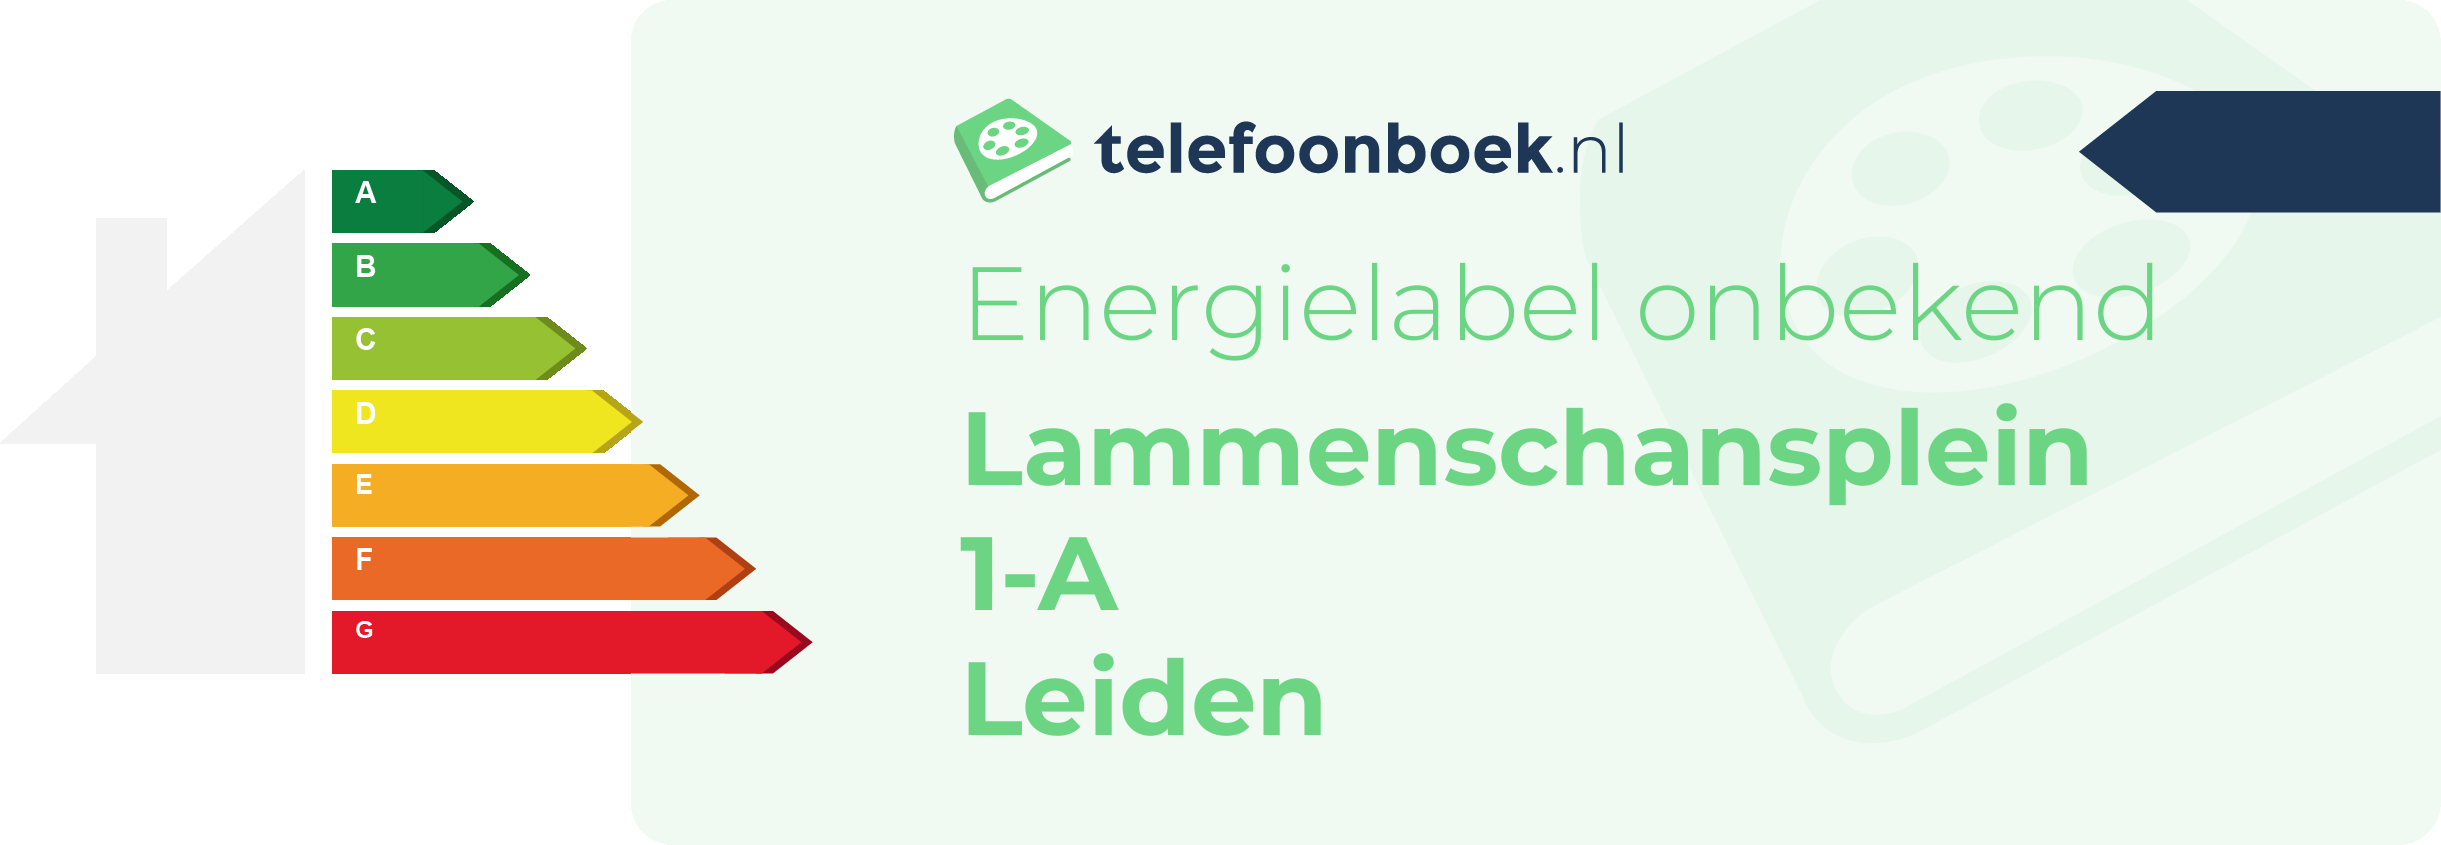 Energielabel Lammenschansplein 1-A Leiden